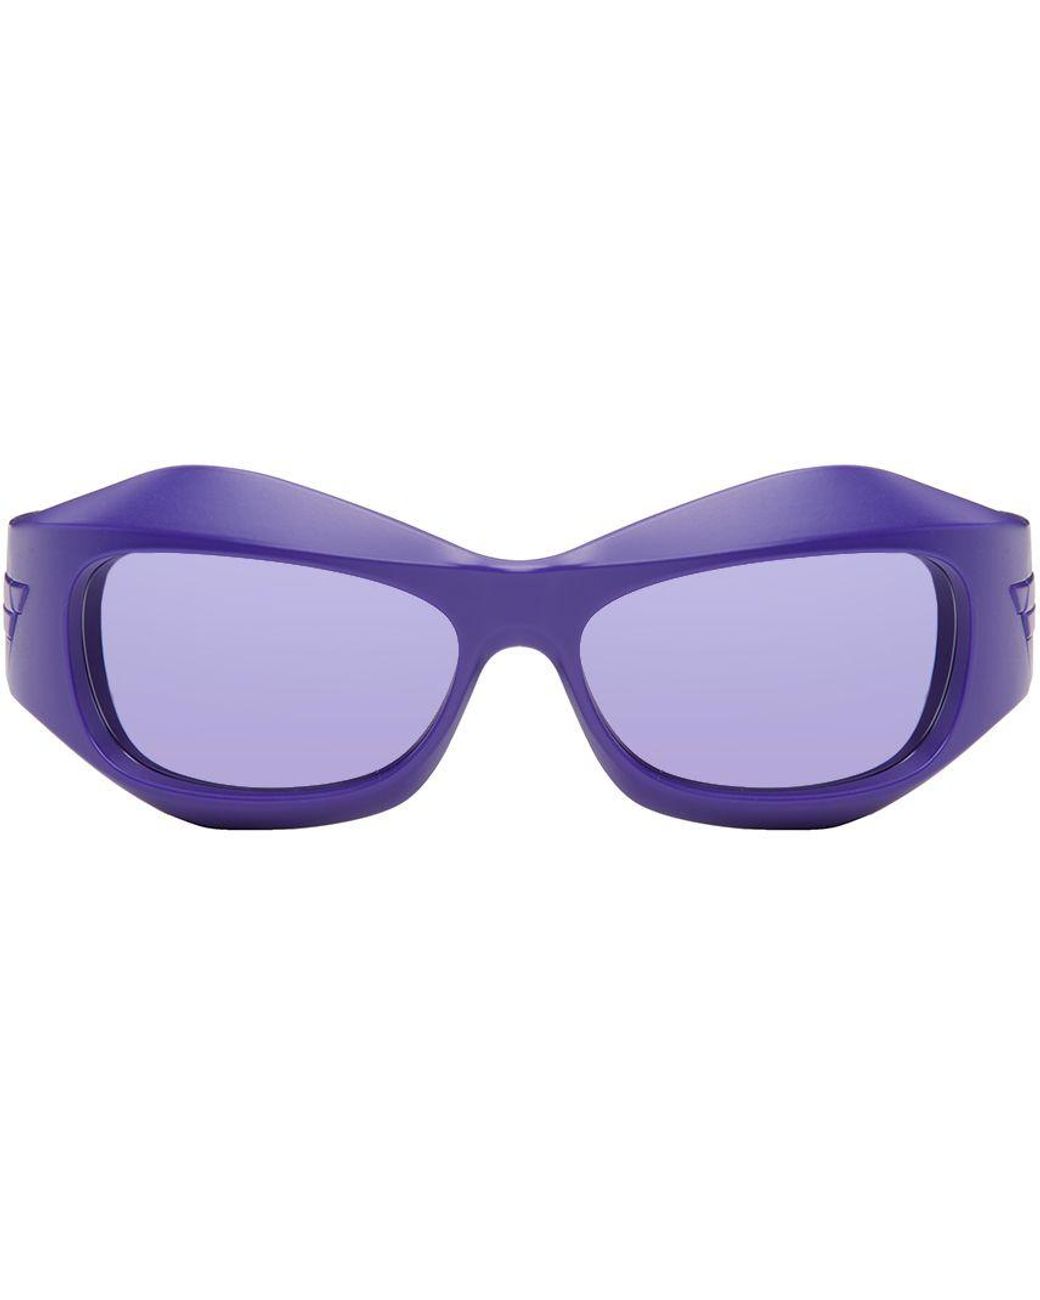 Bottega Veneta Purple Oval Sunglasses | Lyst